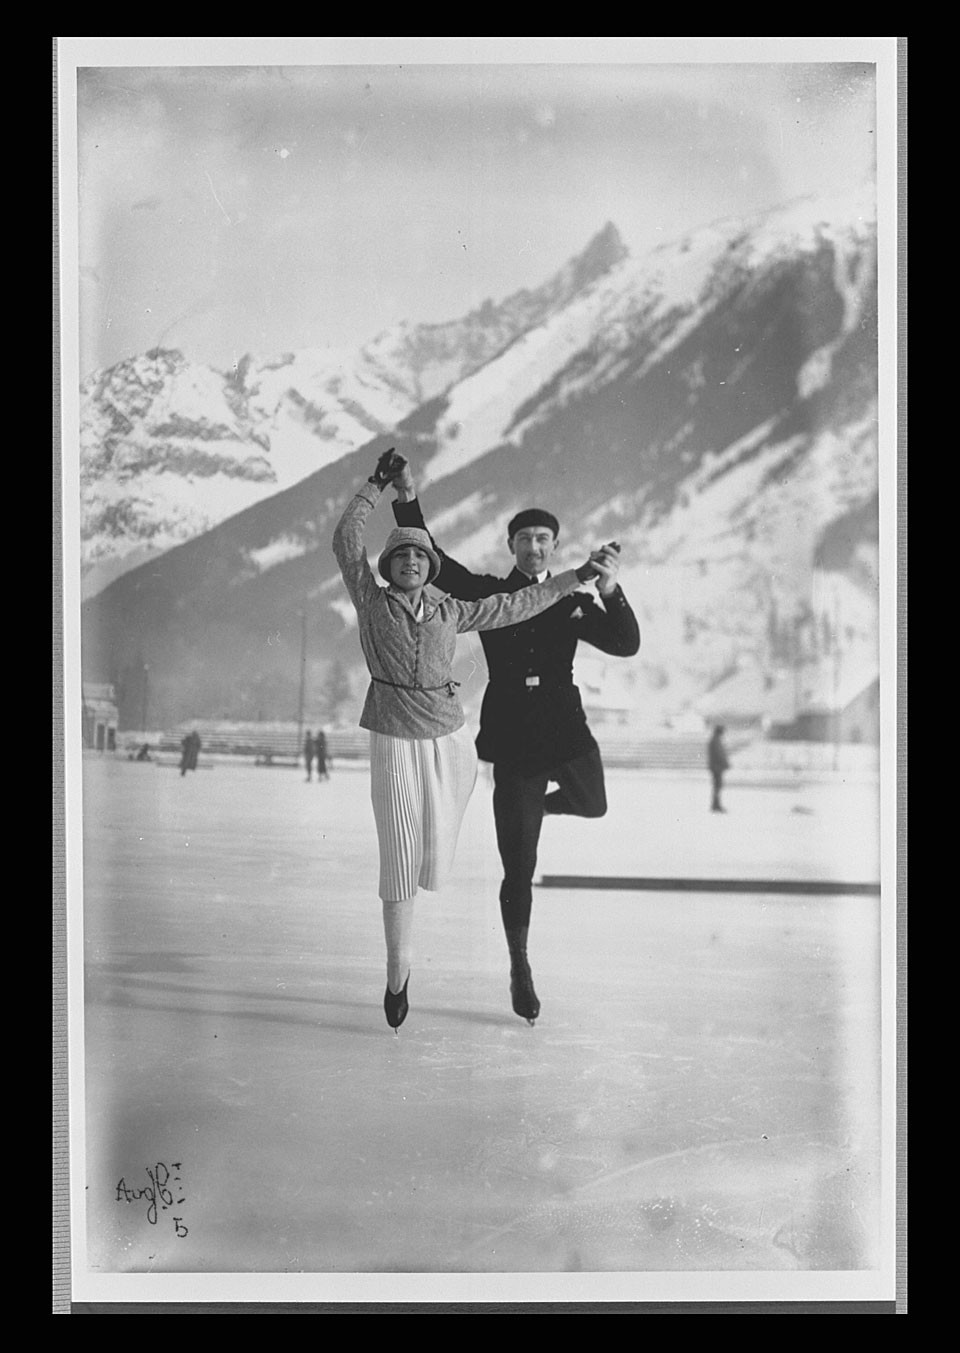 1924年夏慕尼冬季奧運會(夏蒙尼冬奧會)